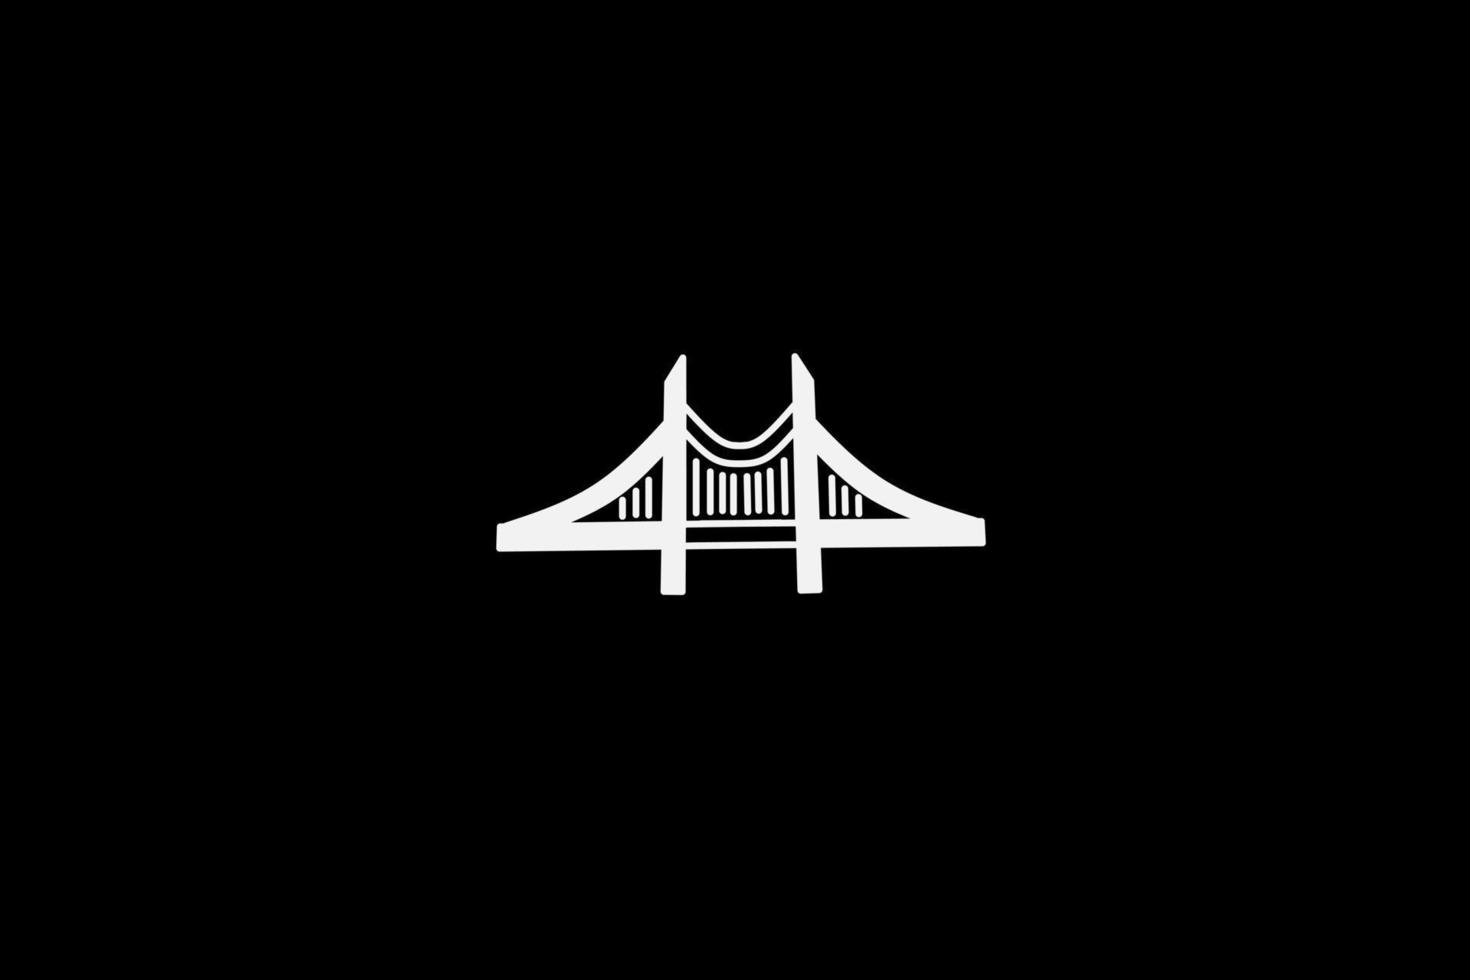 bridge gate lijn popart potrait logo kleurrijk ontwerp met donkere achtergrond. abstracte vectorillustratie. donker minimalistisch behang vector